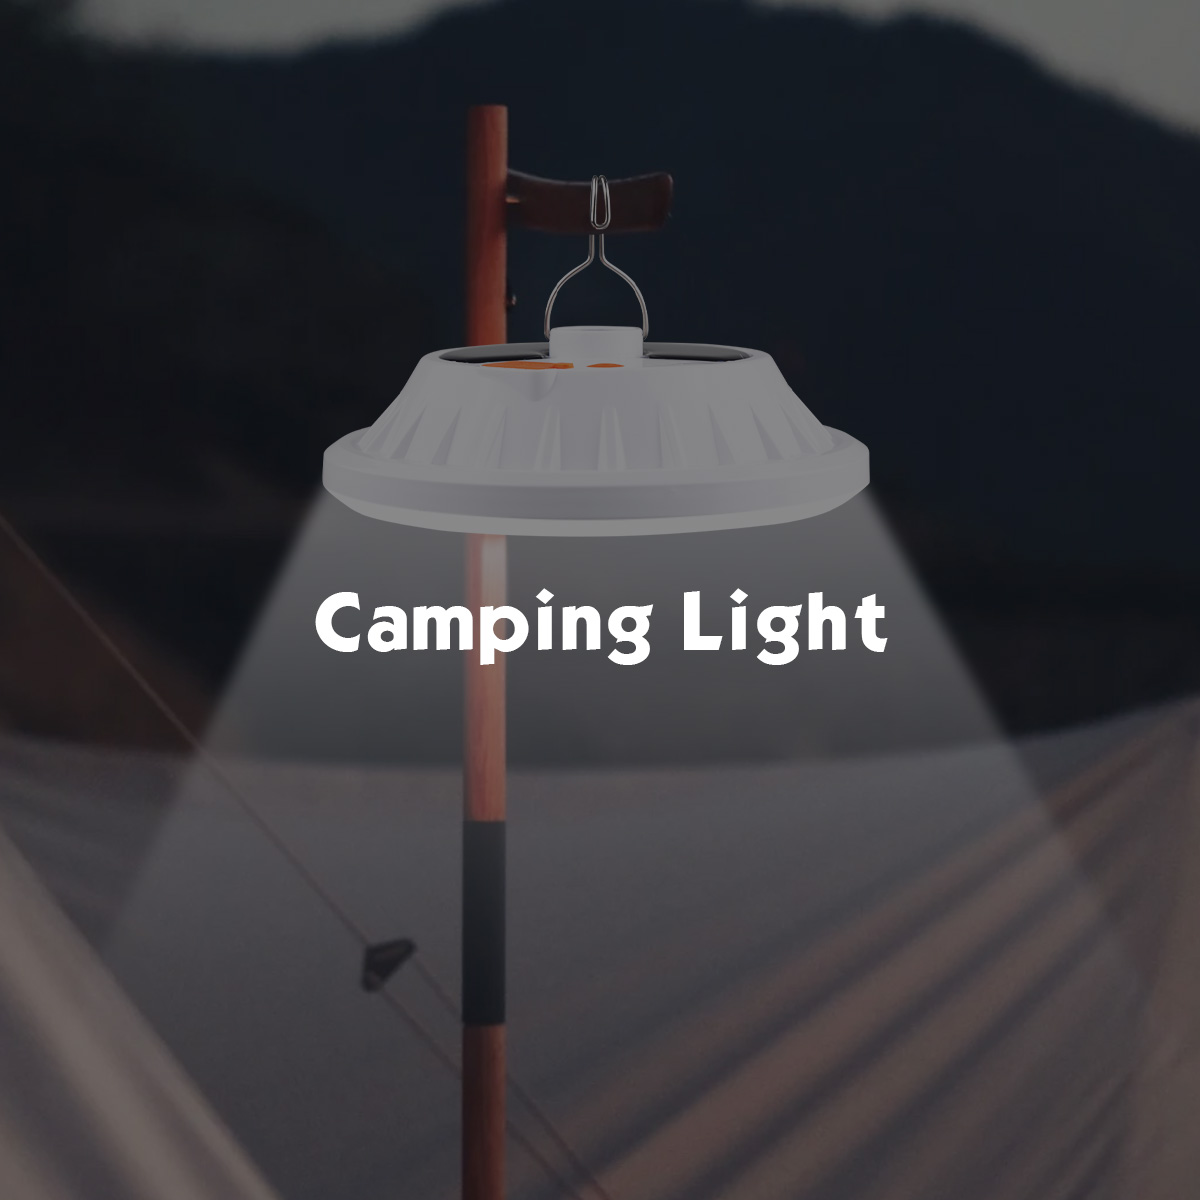 Lampe Solaire Camping oppladbart 3000 Mah 2 pices 1000 lumen lanterne,  camping pour les coupures de courant de voiture randonne pche d'urgence